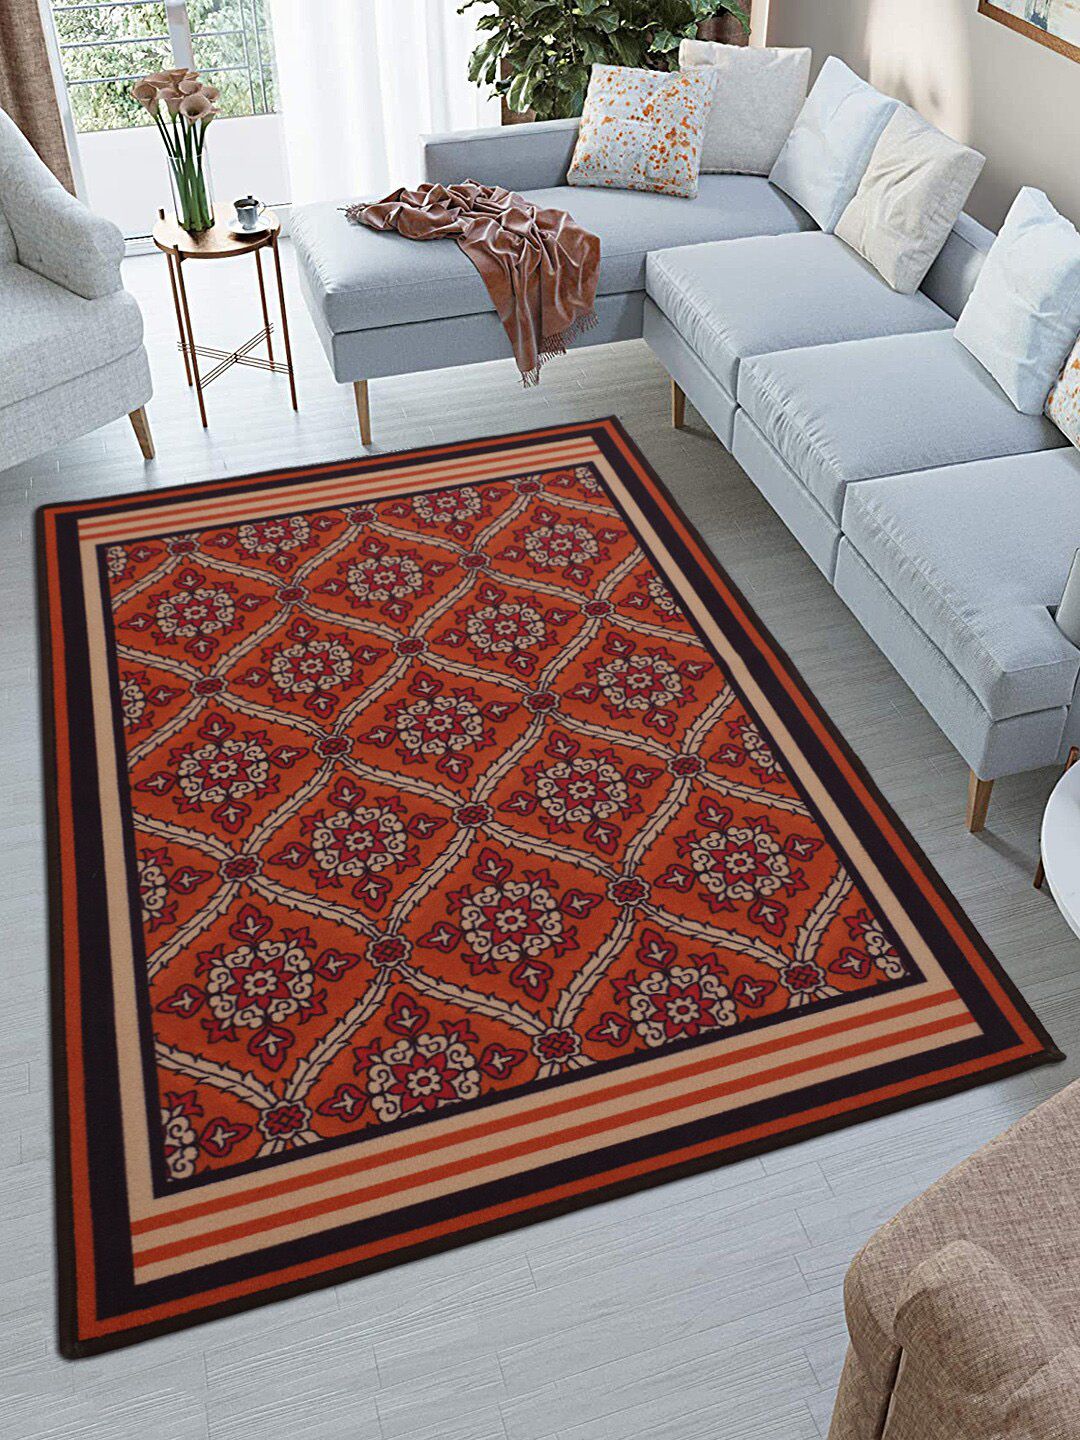 RUGSMITH Red & Orange Printed Premium Quality Anti-Skid Carpet Price in India